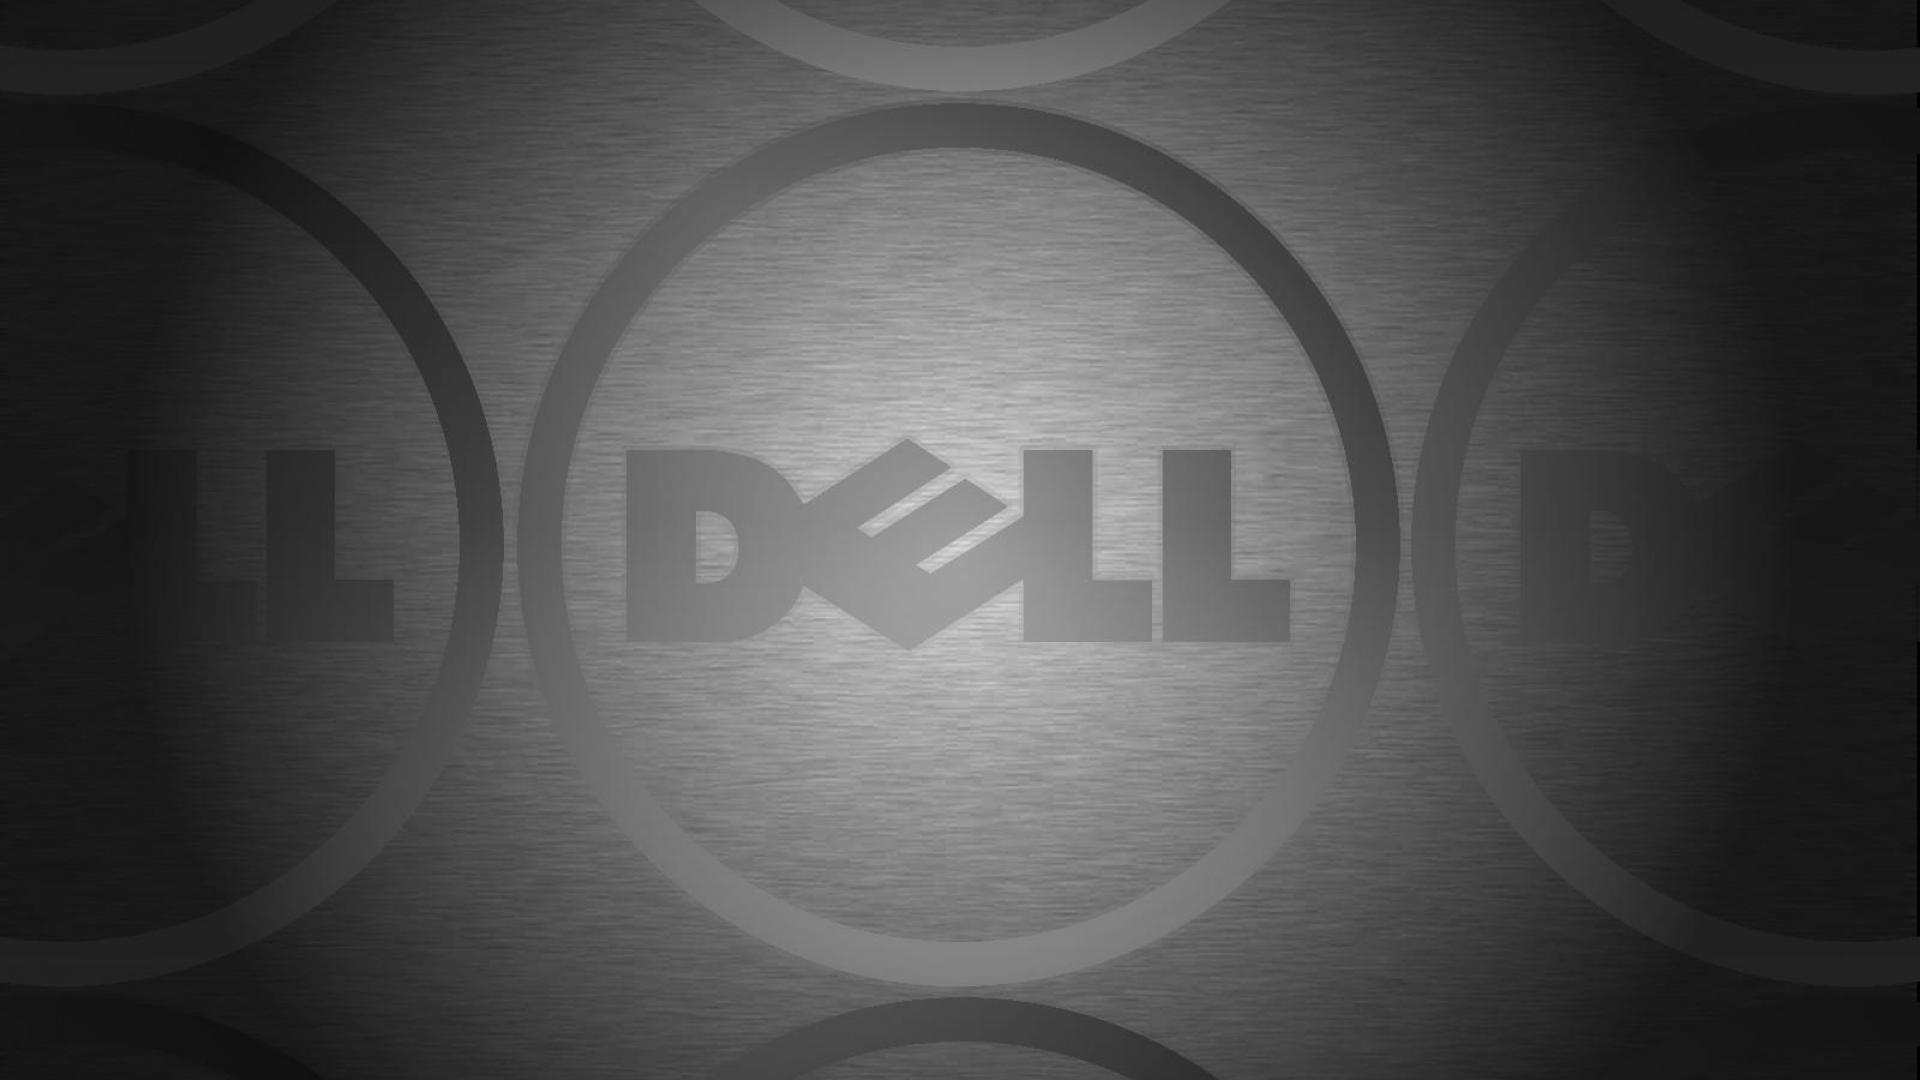 Dell on brushed aluminium 570624 wallpaper - HQ Desktop